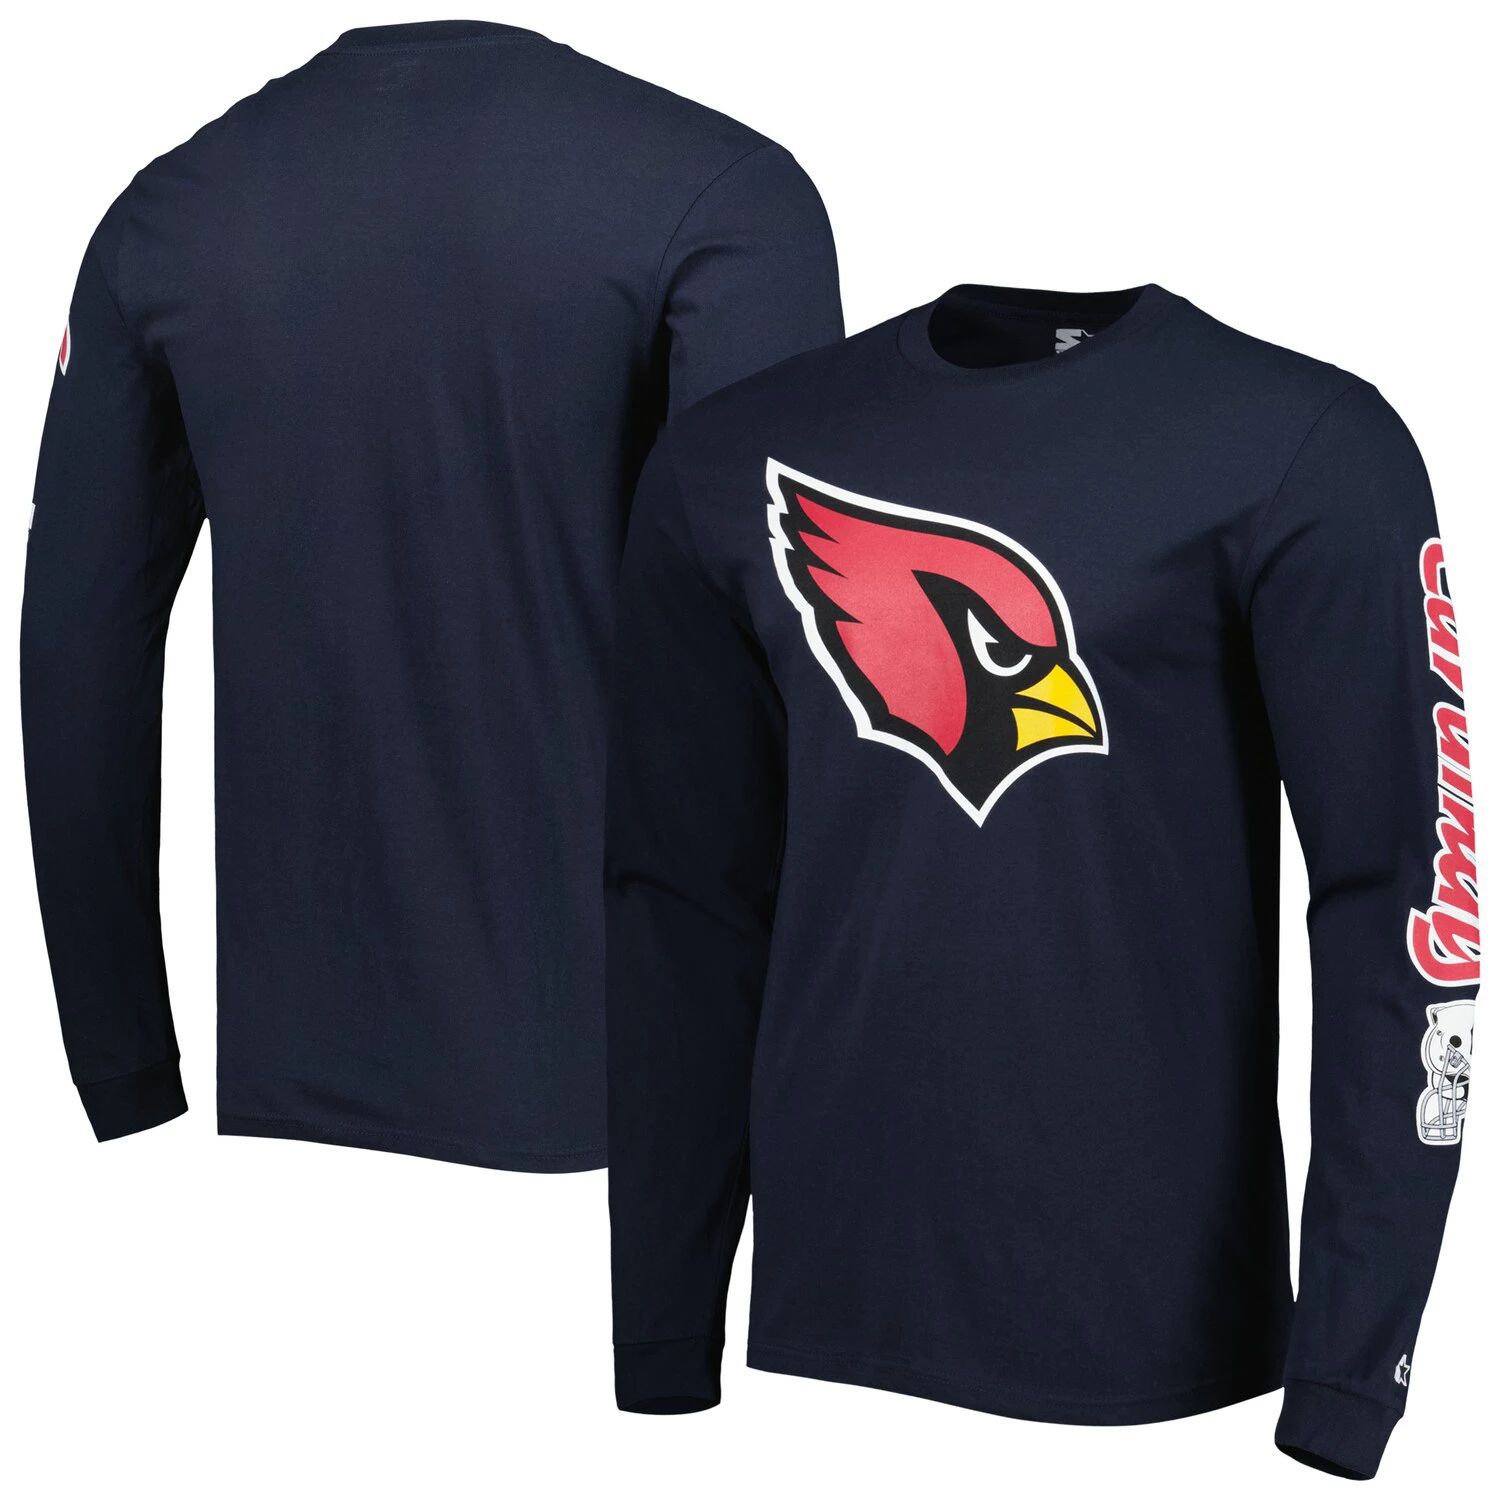 Мужская темно-синяя футболка с длинным рукавом Arizona Cardinals Halftime Starter мужская футболка с длинным рукавом cardinal белая arizona cardinals halftime starter мульти